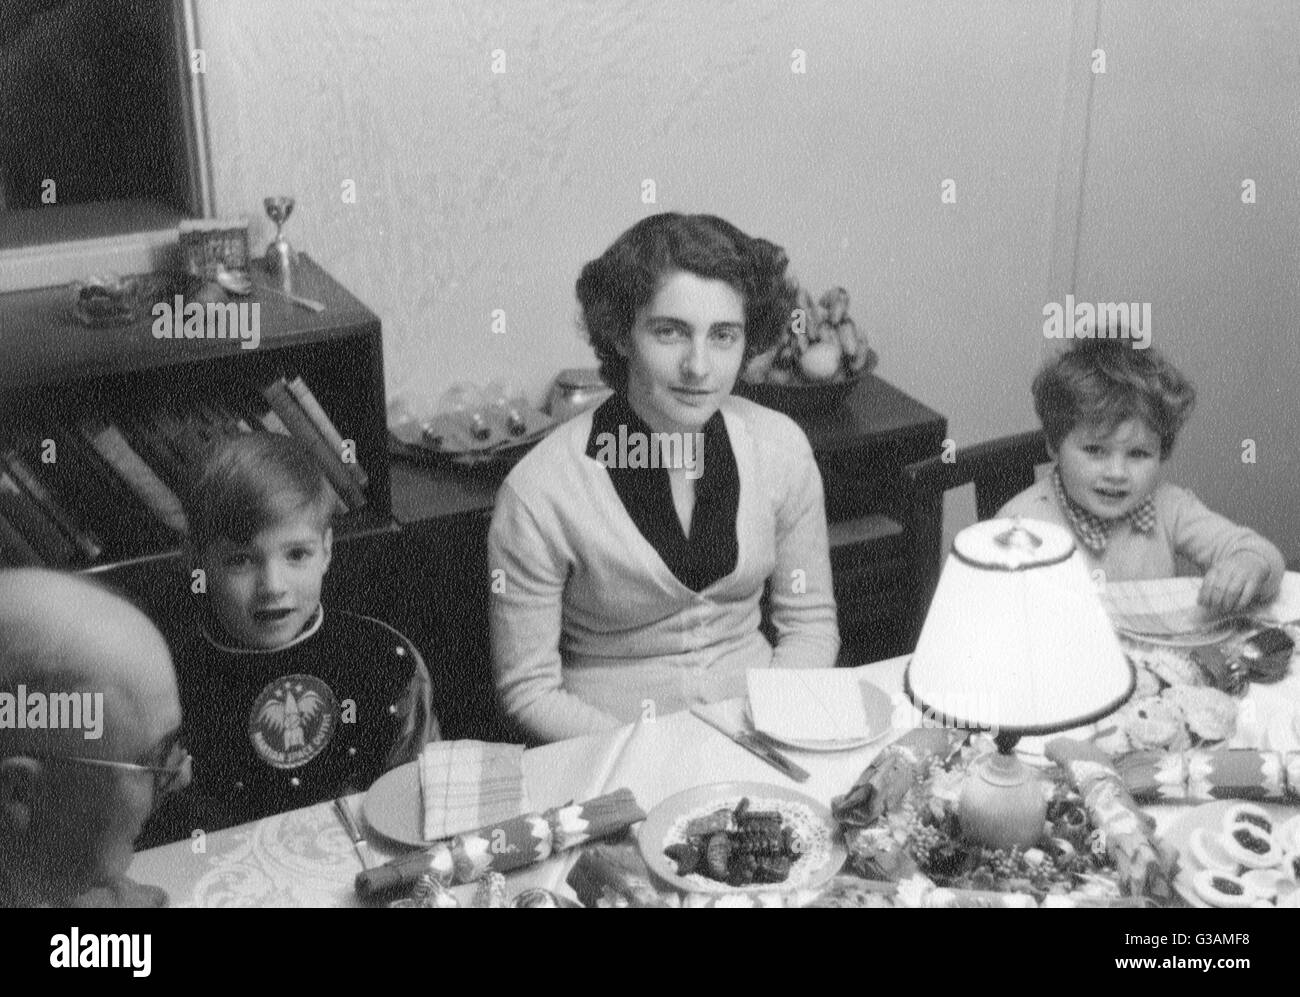 Family Christmas Dinner - 1950s Stock Photo